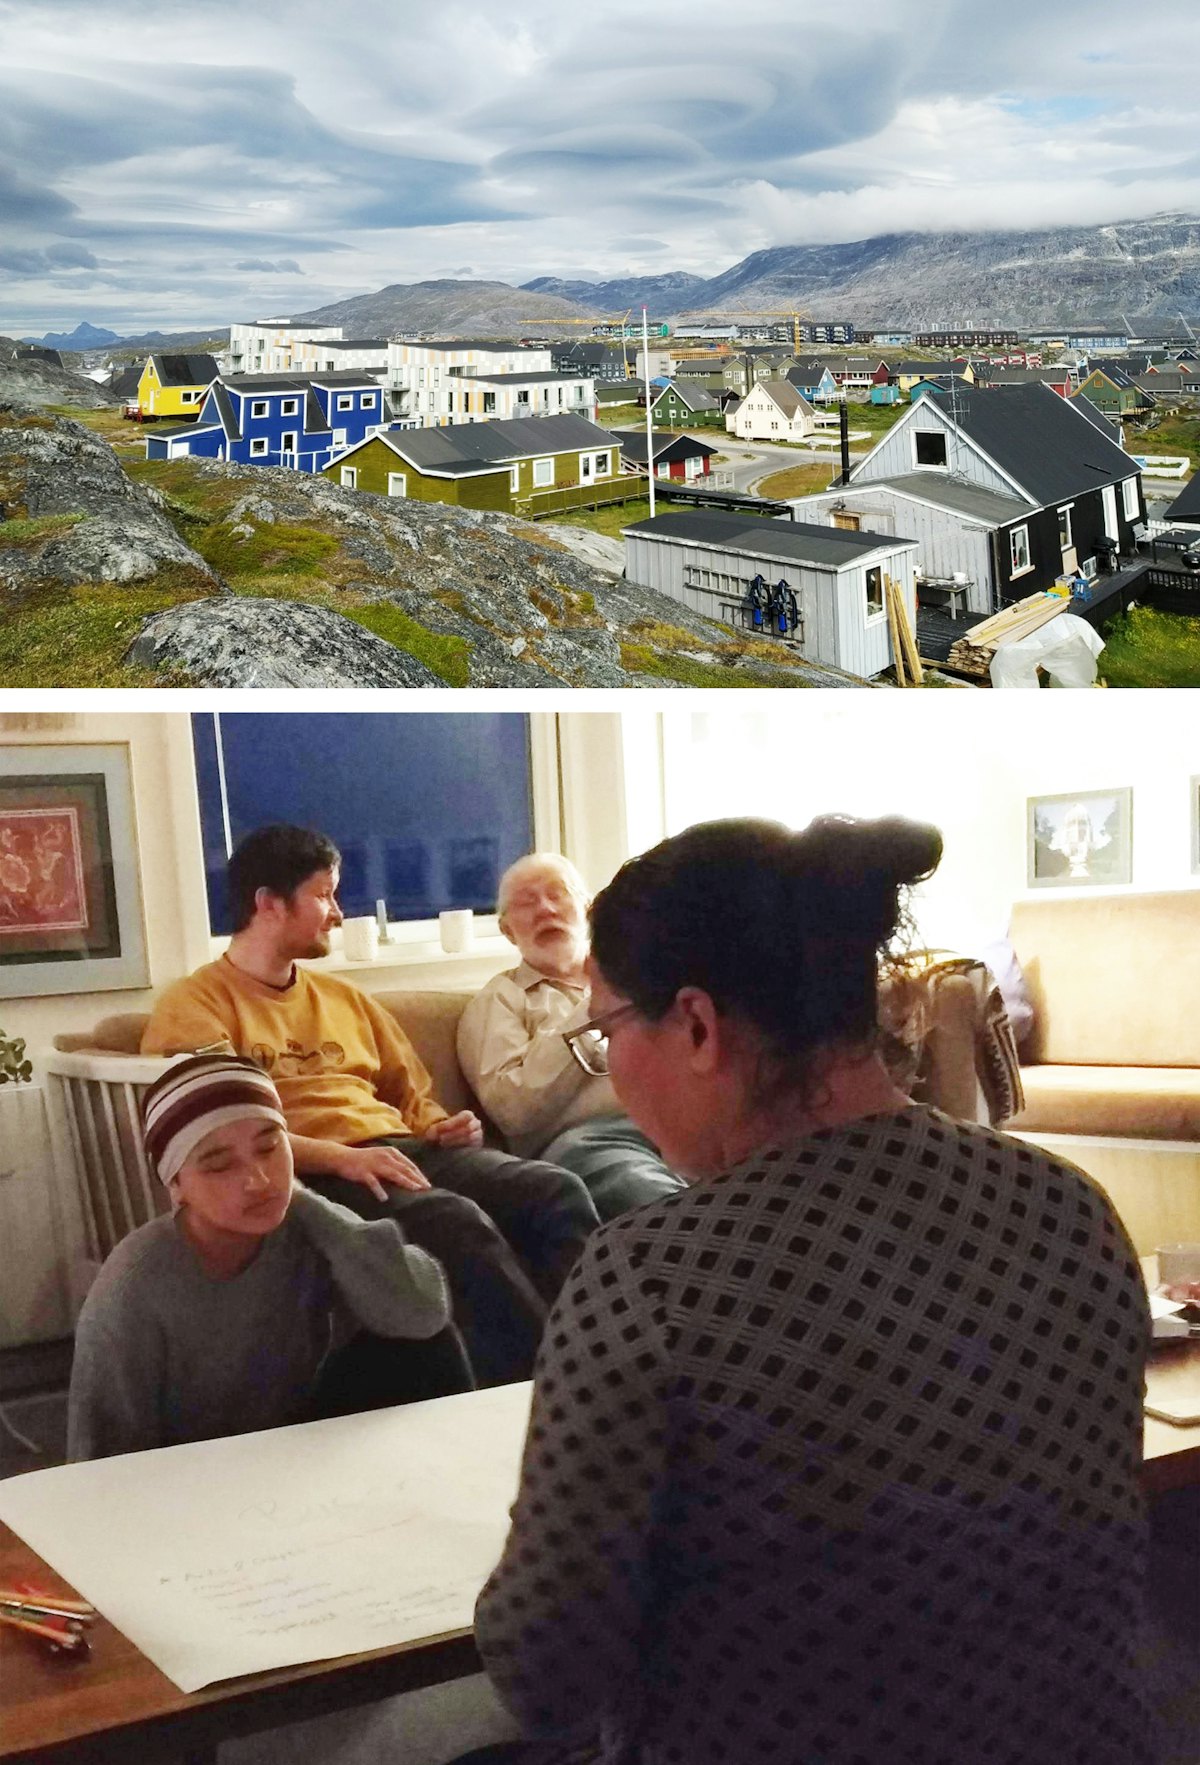 En Groenlandia, la Comunidad de Nuuk también se está preparando para el próximo bicentenario. En una reunión reciente, los participantes estudiaron ideas para conmemorar el bicentenario del Báb. «¡La atmósfera espiritual era maravillosa!», expresó un miembro de la Comunidad.